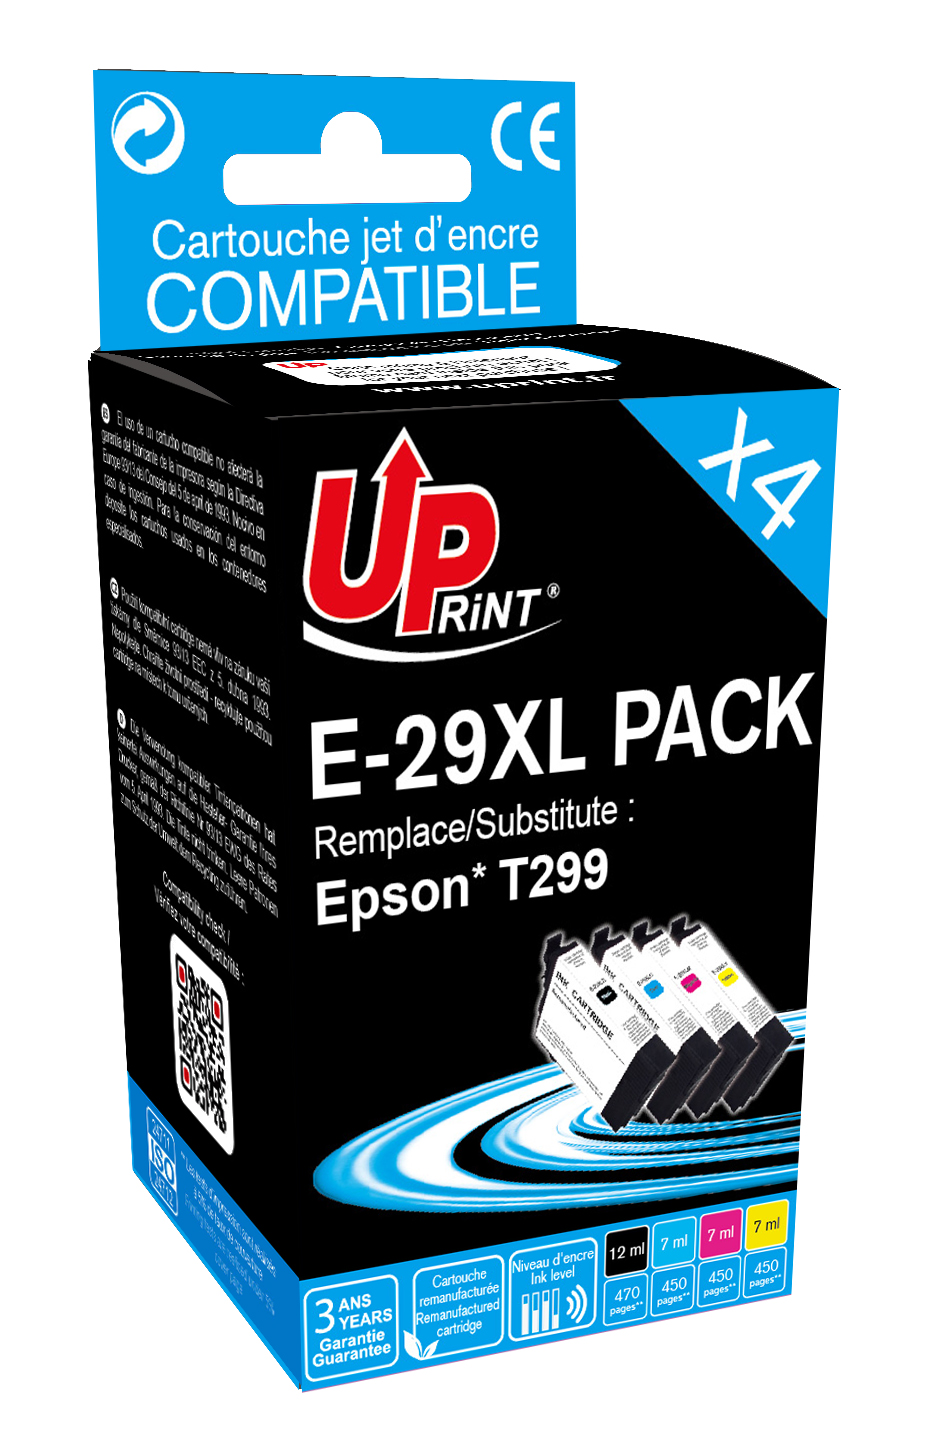 cartouches encre compatibles pour imprimante Epson XP-435 LOT de 5 - k2print